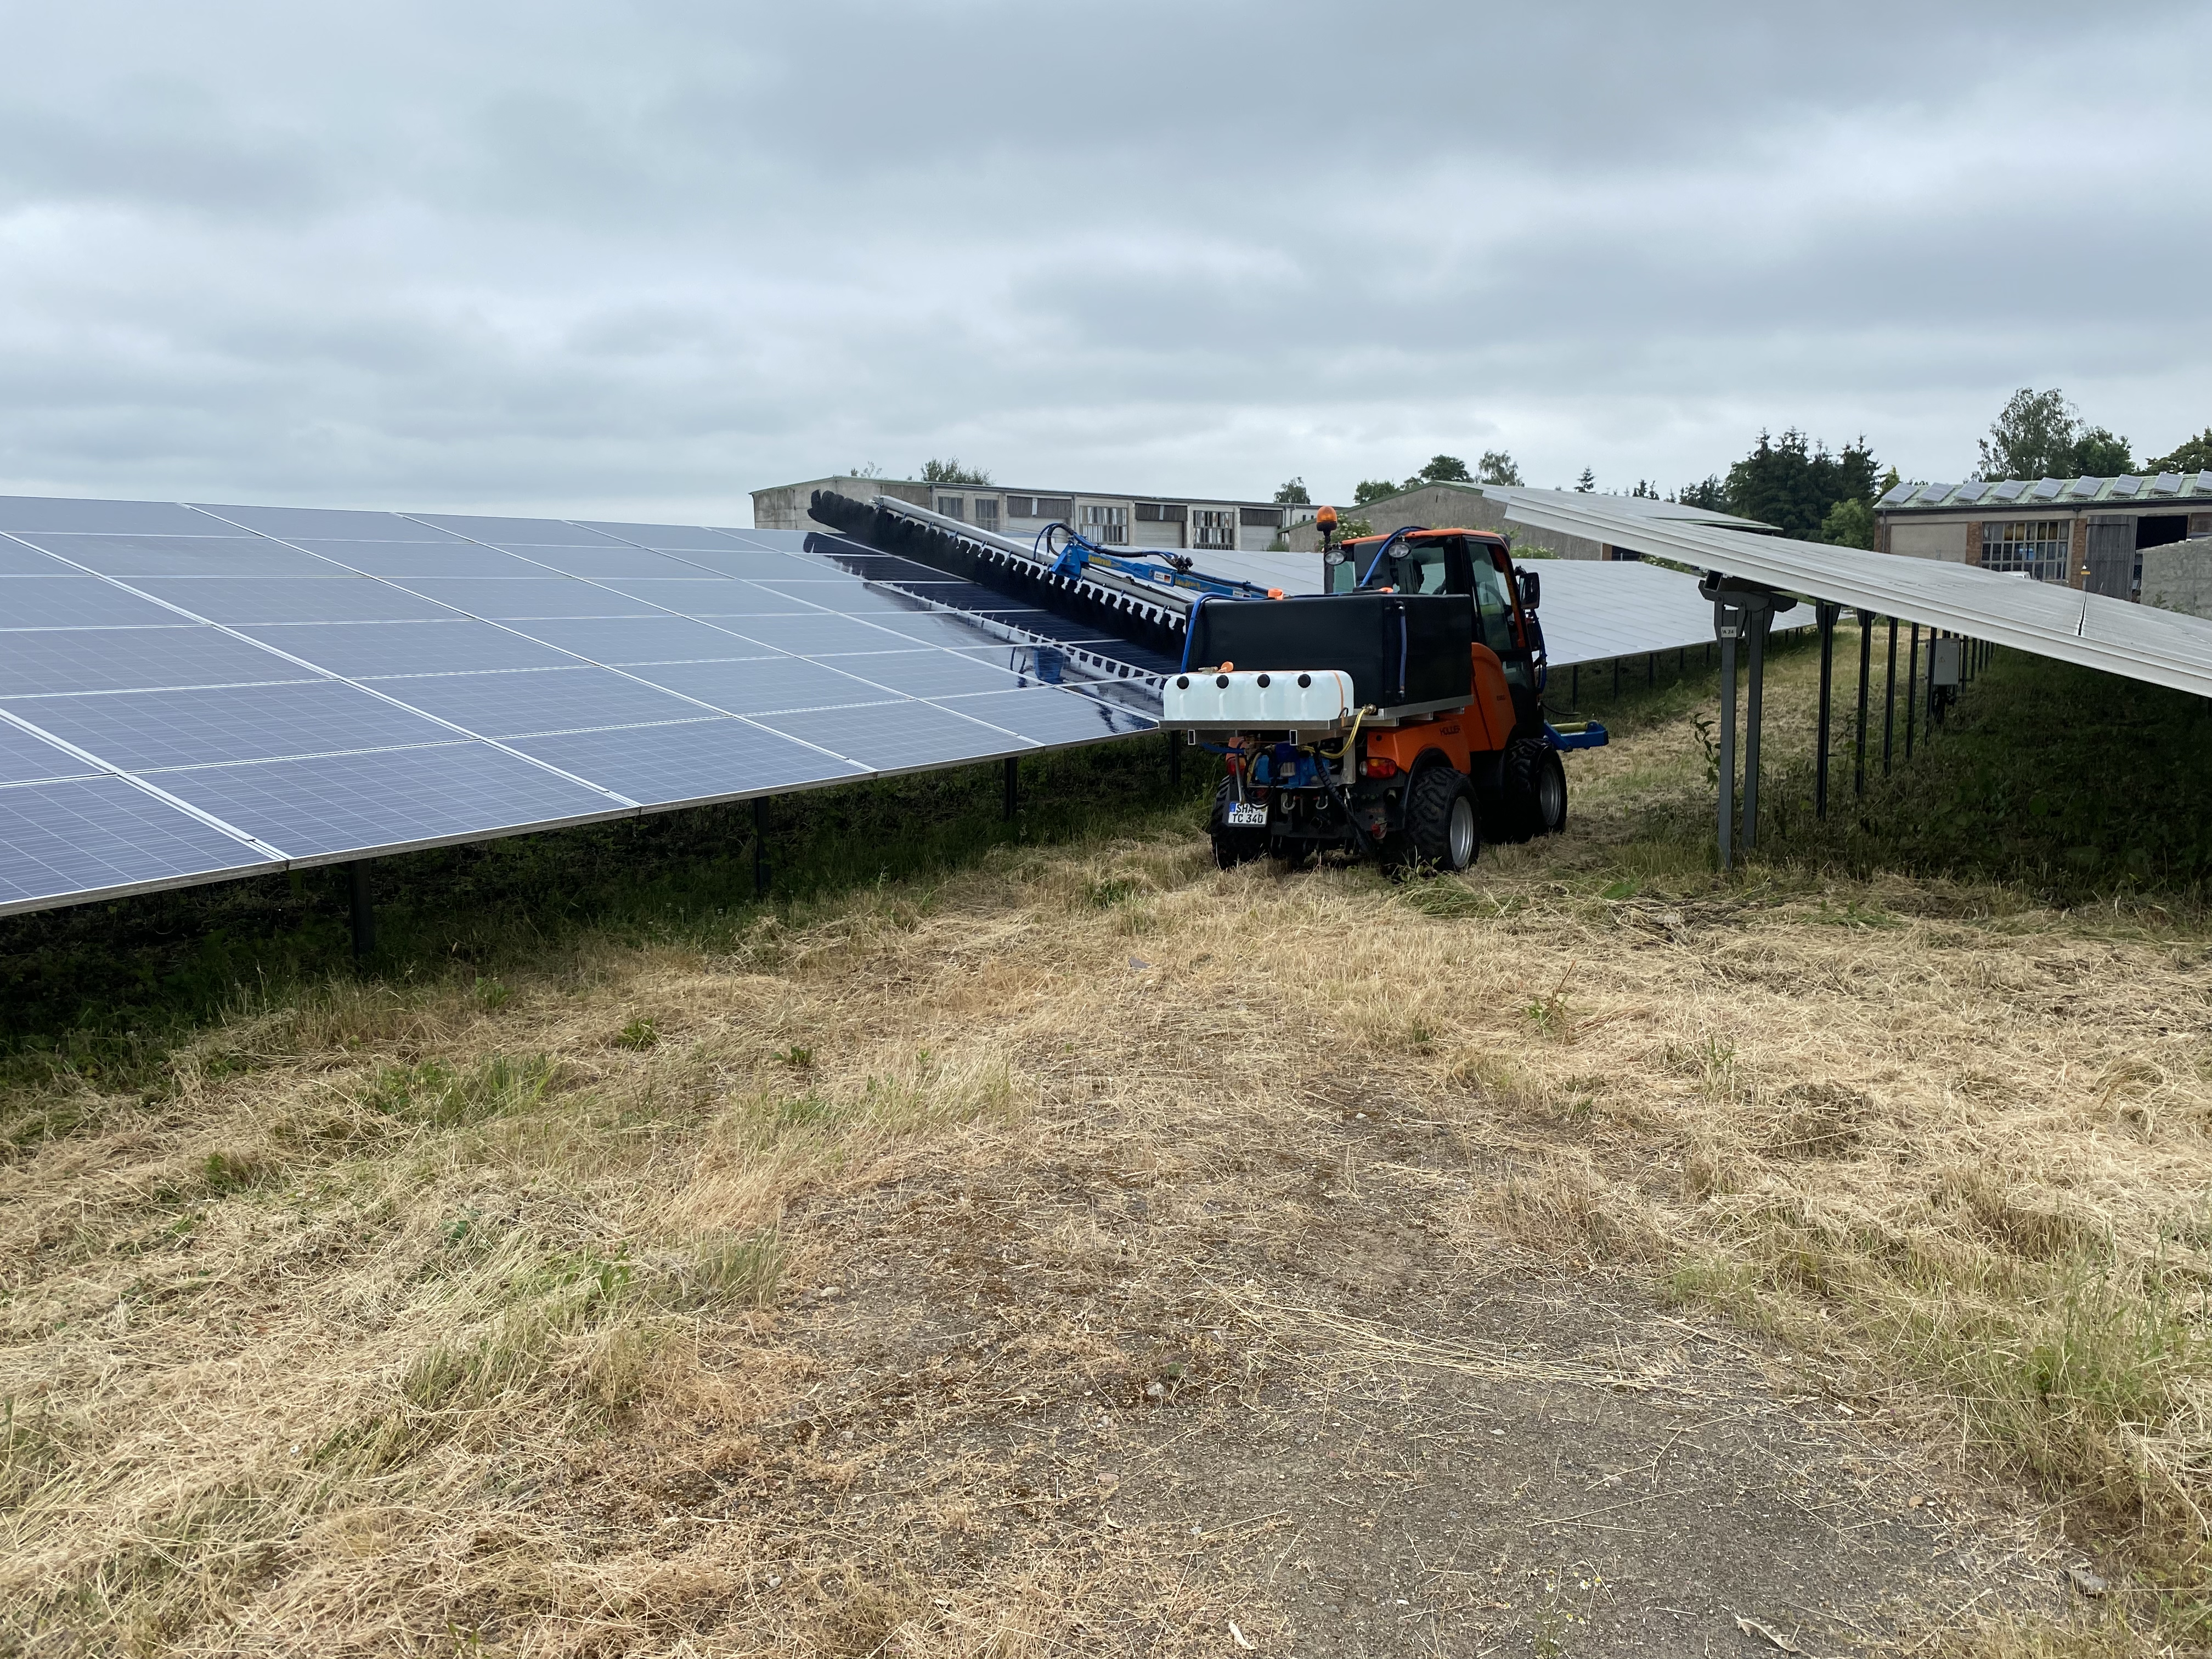 Solarpark Reinigung in Brandenburg, PV Freiflächenreinigung mit neuster Reinigungstechnik